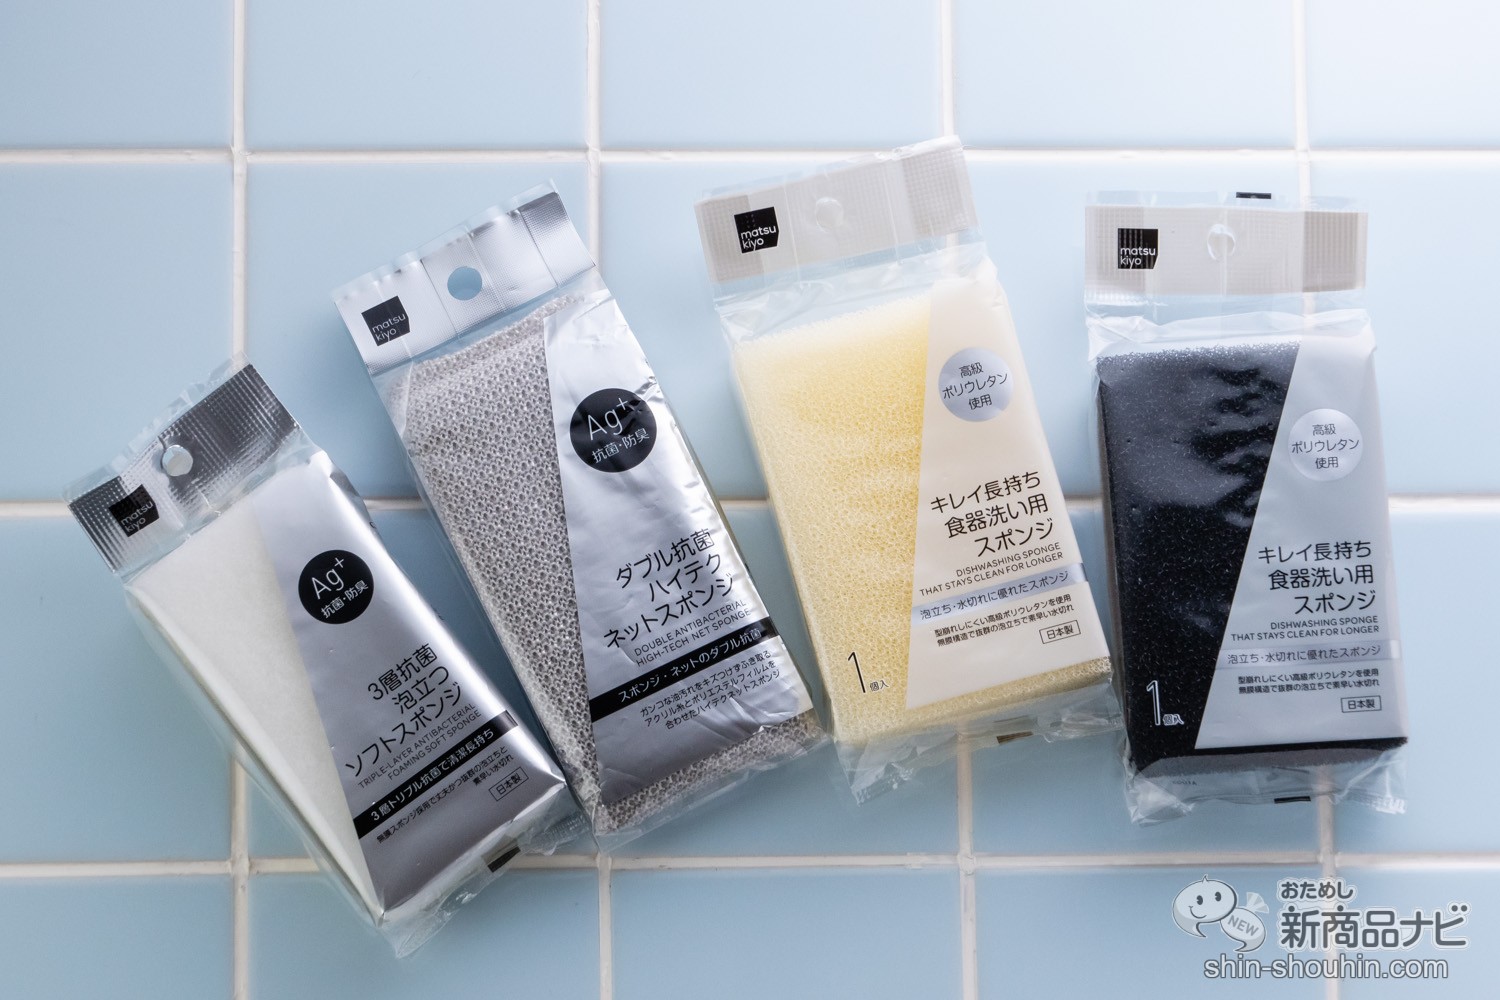 おためし新商品ナビ » Blog Archive » 機能性×スタイリッシュなデザイン！ 『matsukiyo キッチン用スポンジシリーズ』を食器 の種類や汚れに合わせてスマートに使い分けよう